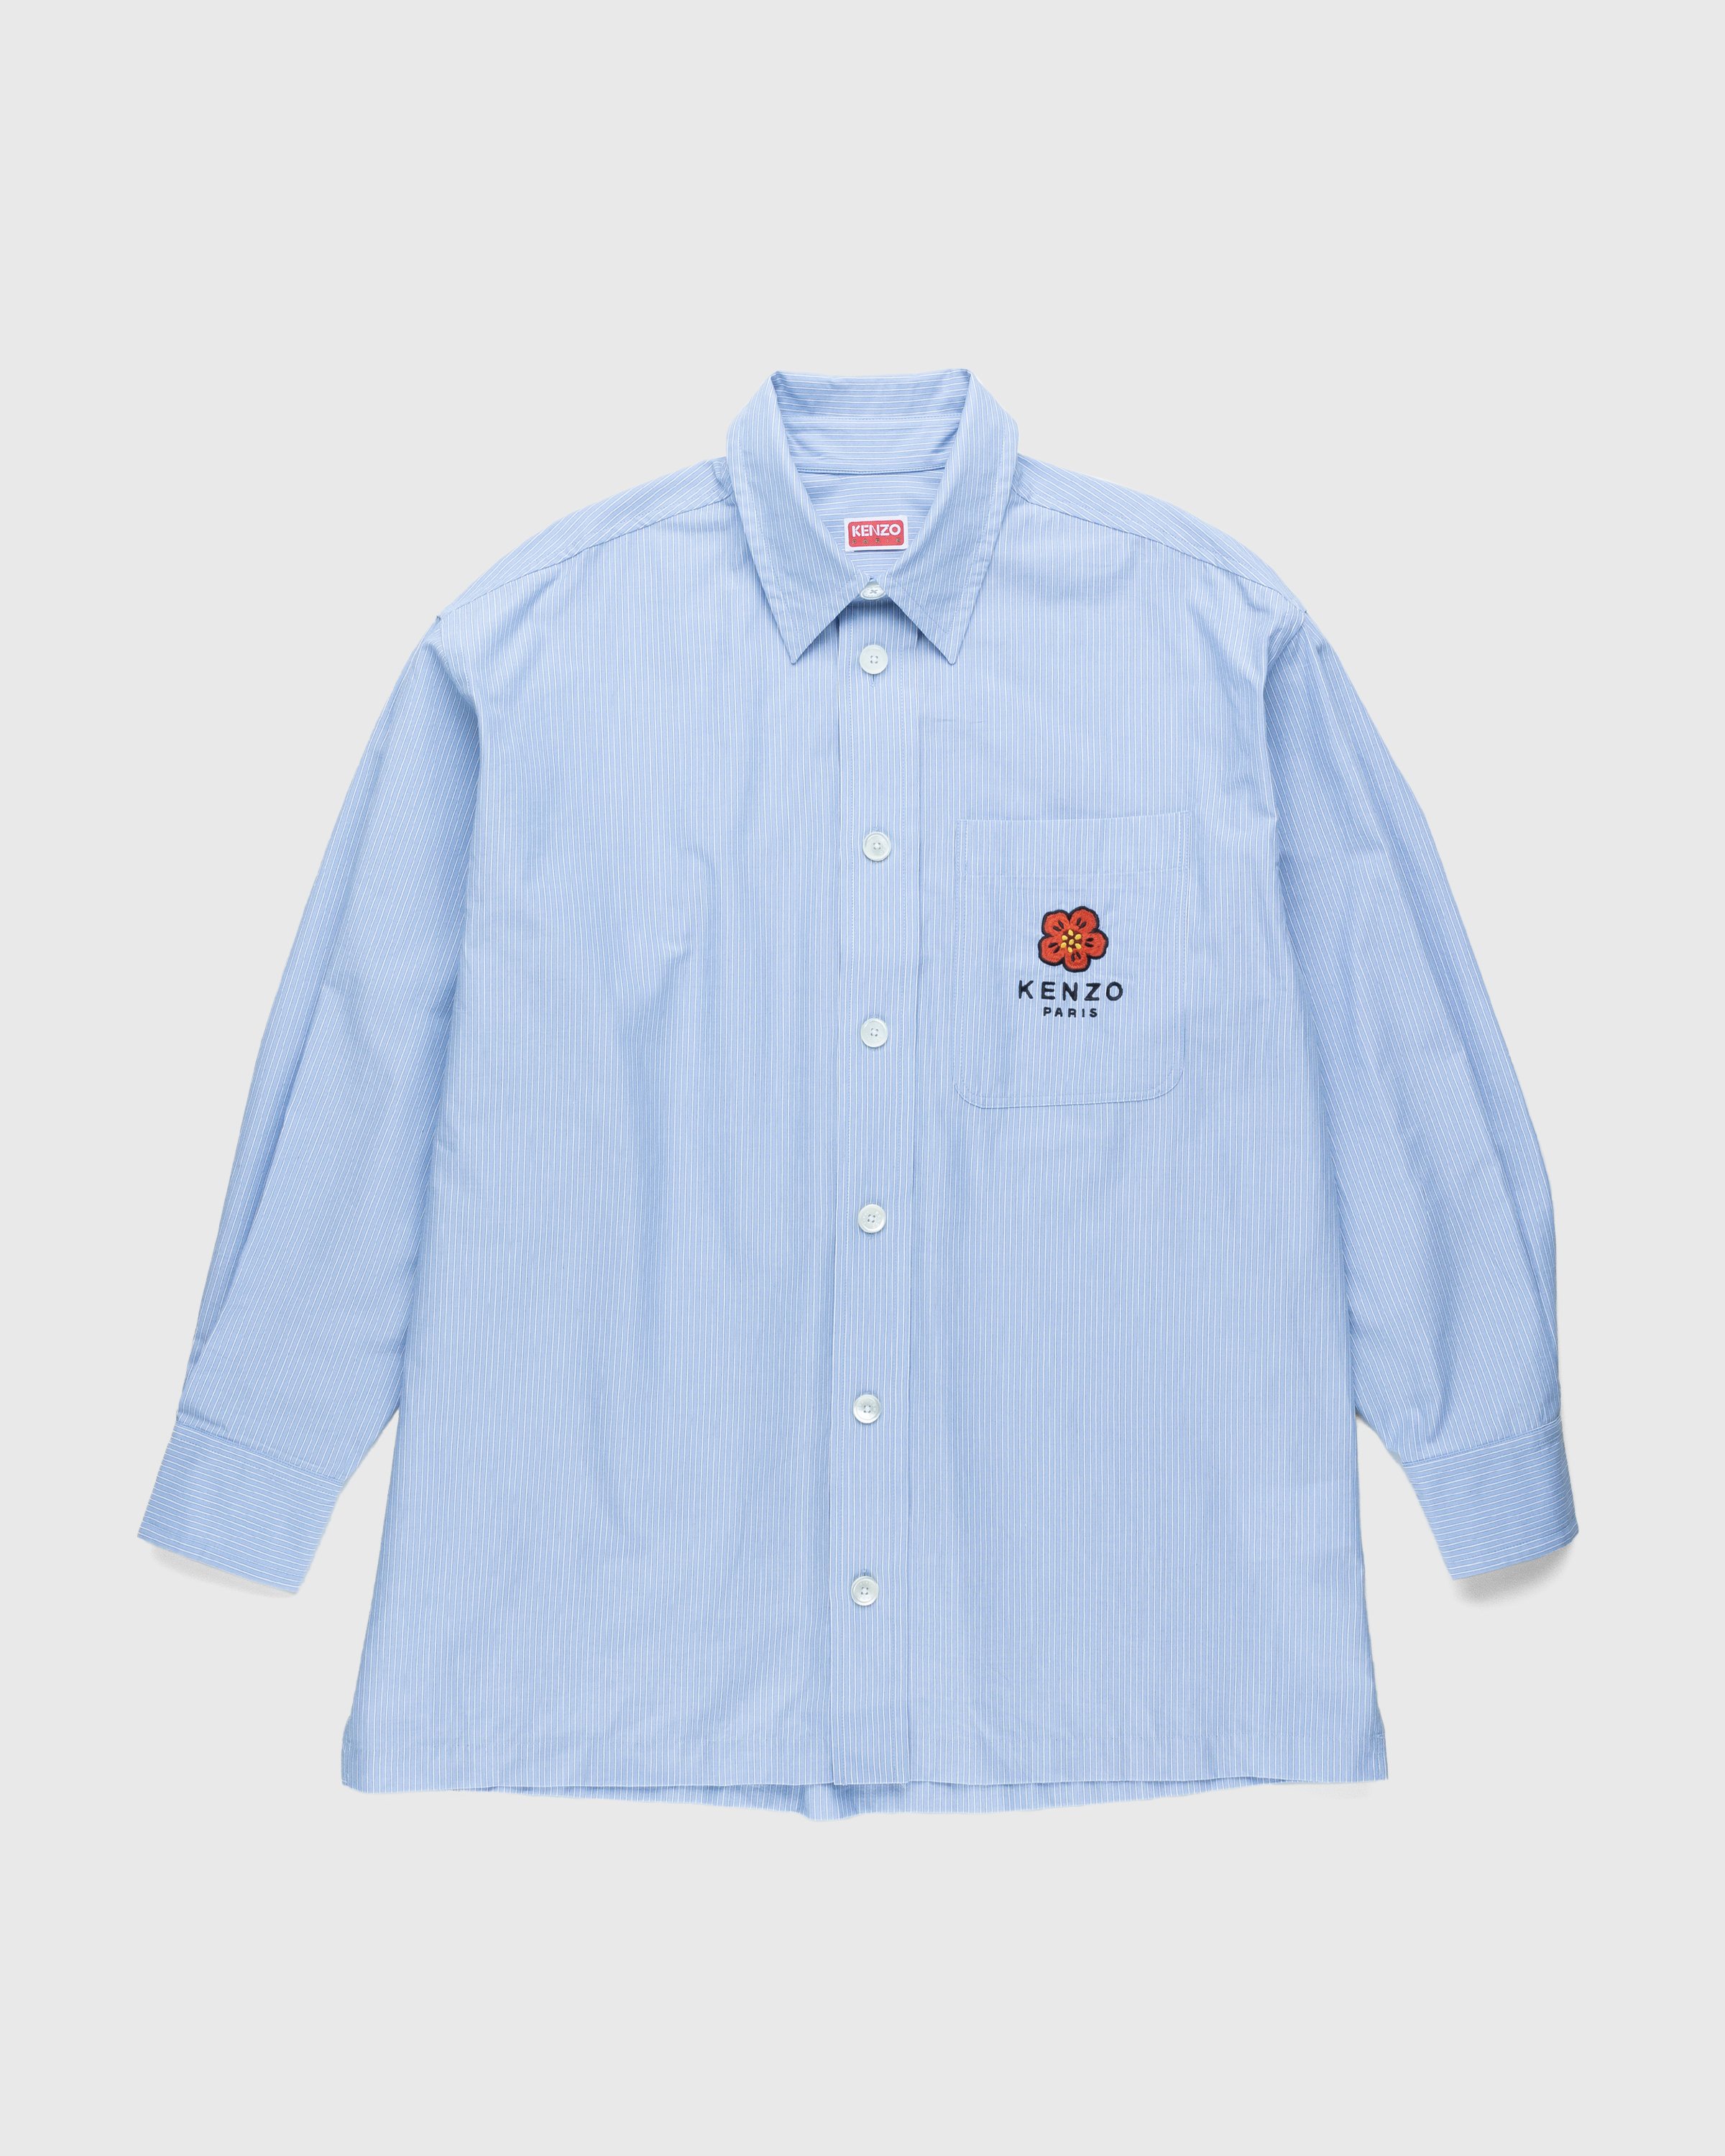 Kenzo - Boke Flower Crest Overshirt Sky Blue - Clothing - Blue - Image 1